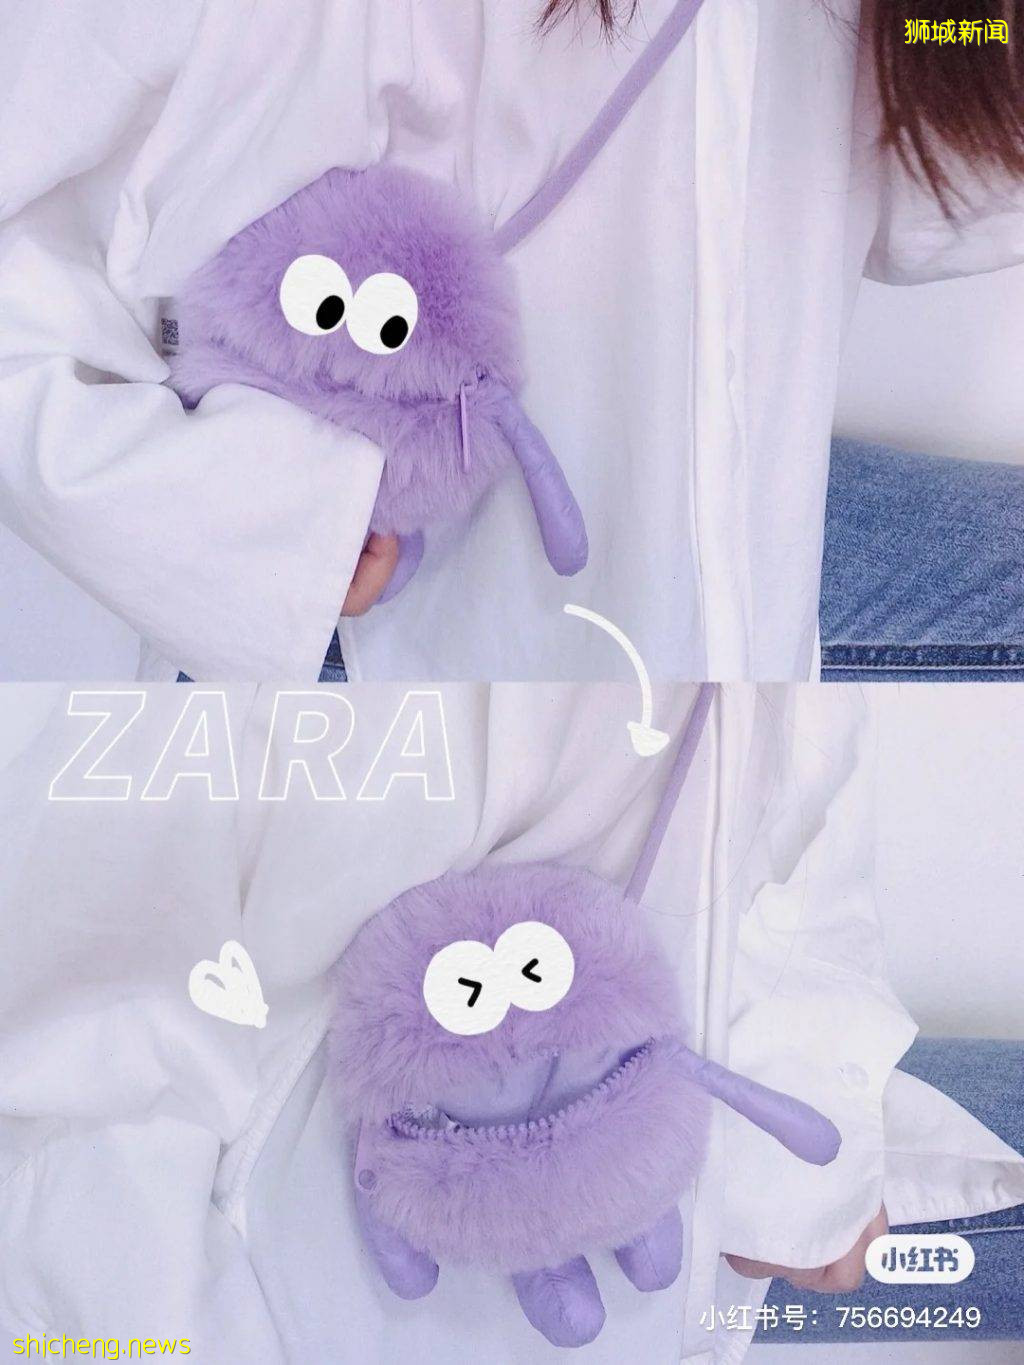 超抢手好物💥 ZARA全新推出怪兽包！吸睛设计萌到炸裂✨ 赶紧拿下这个可爱小物吧